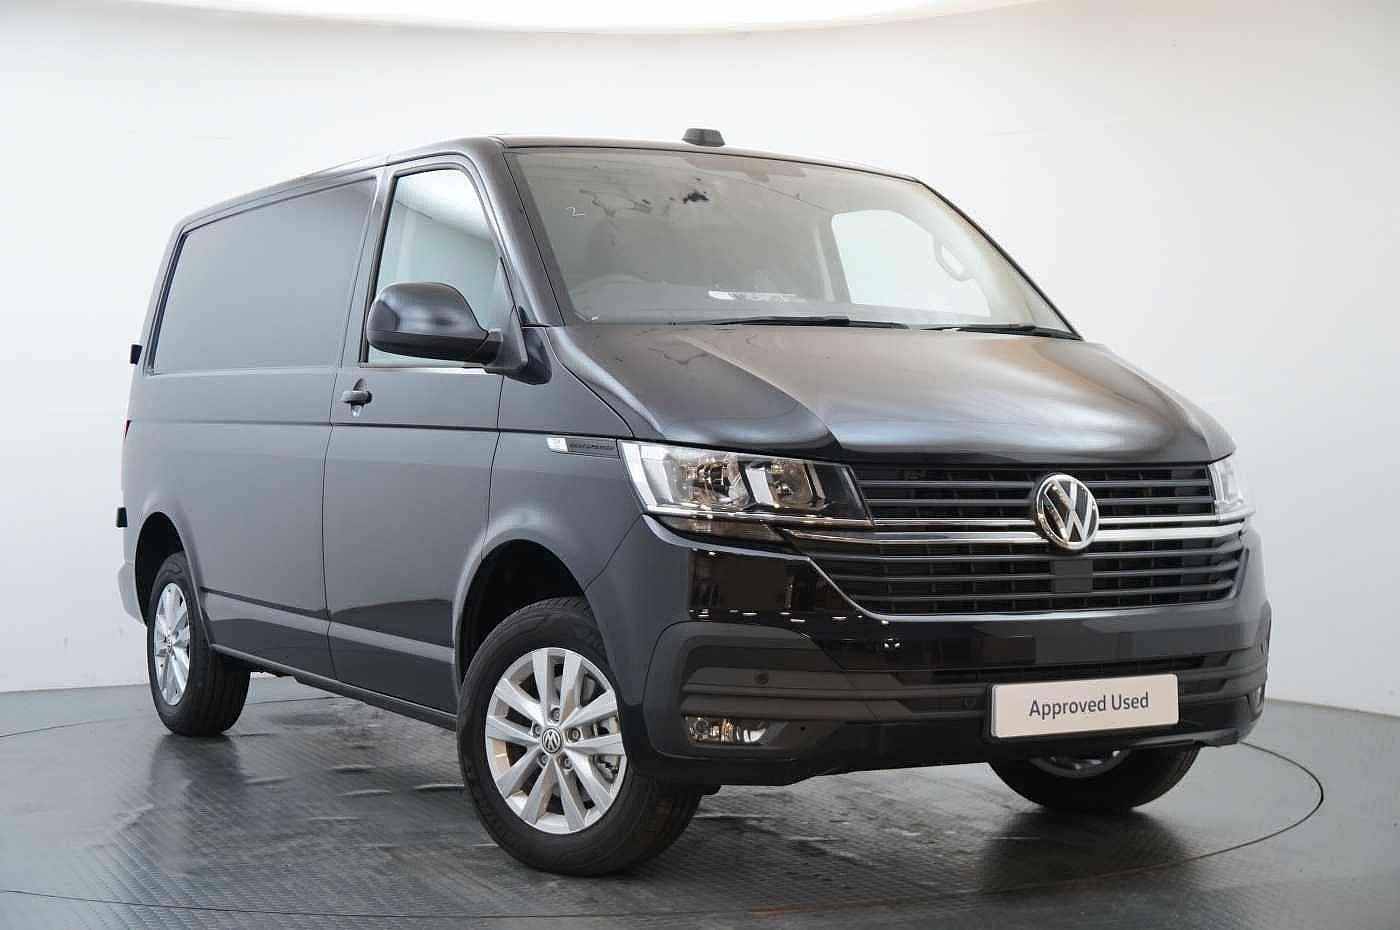 Volkswagen Transporter for sale from Western Volkswagen Van Centre